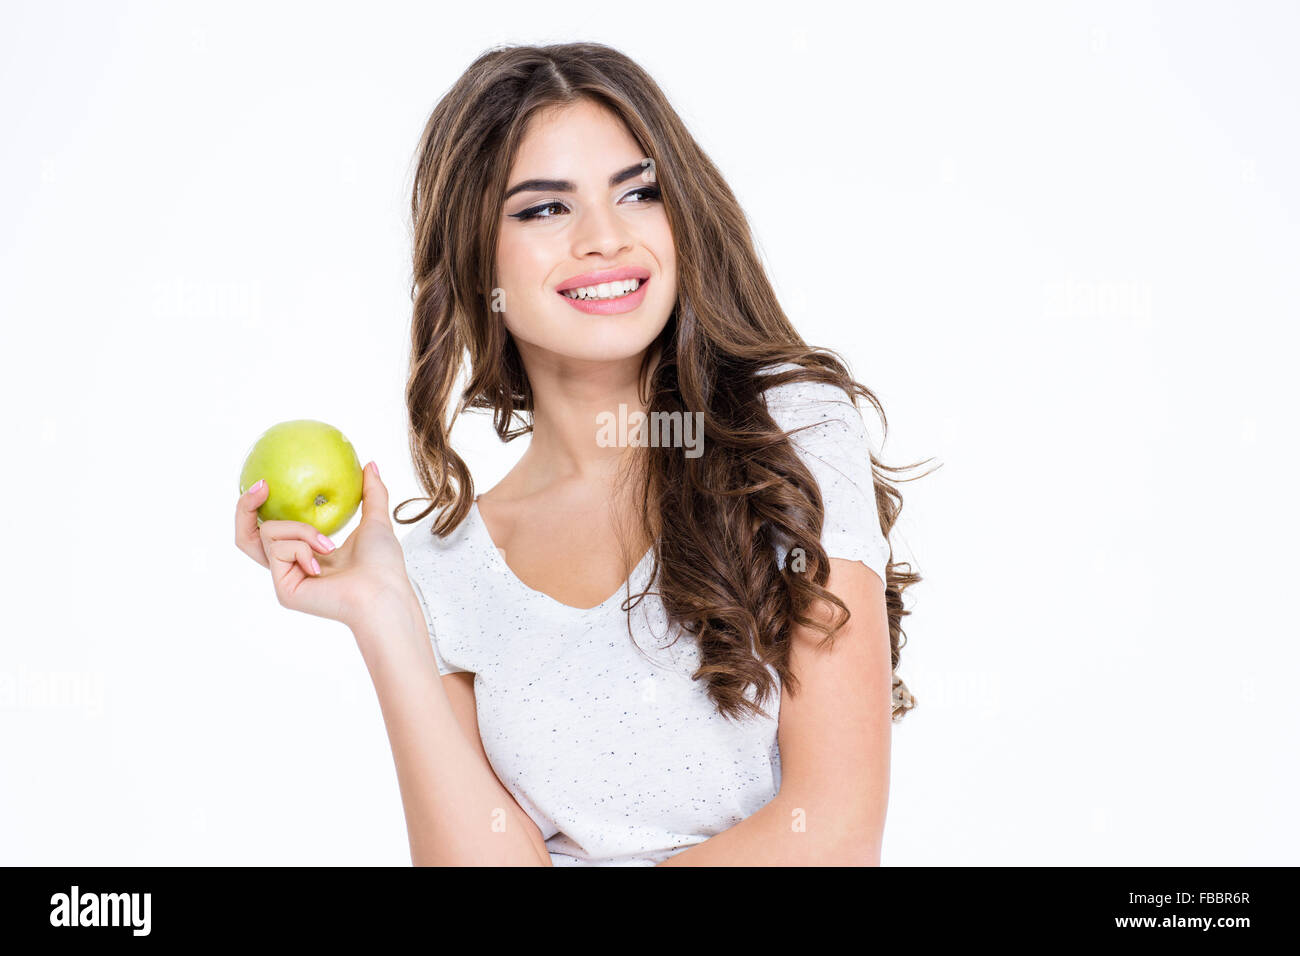 Porträt eines lächelnd wunderschöne Frau Holding Apfel und auf der Suche nach isoliert auf weißem Hintergrund Stockfoto